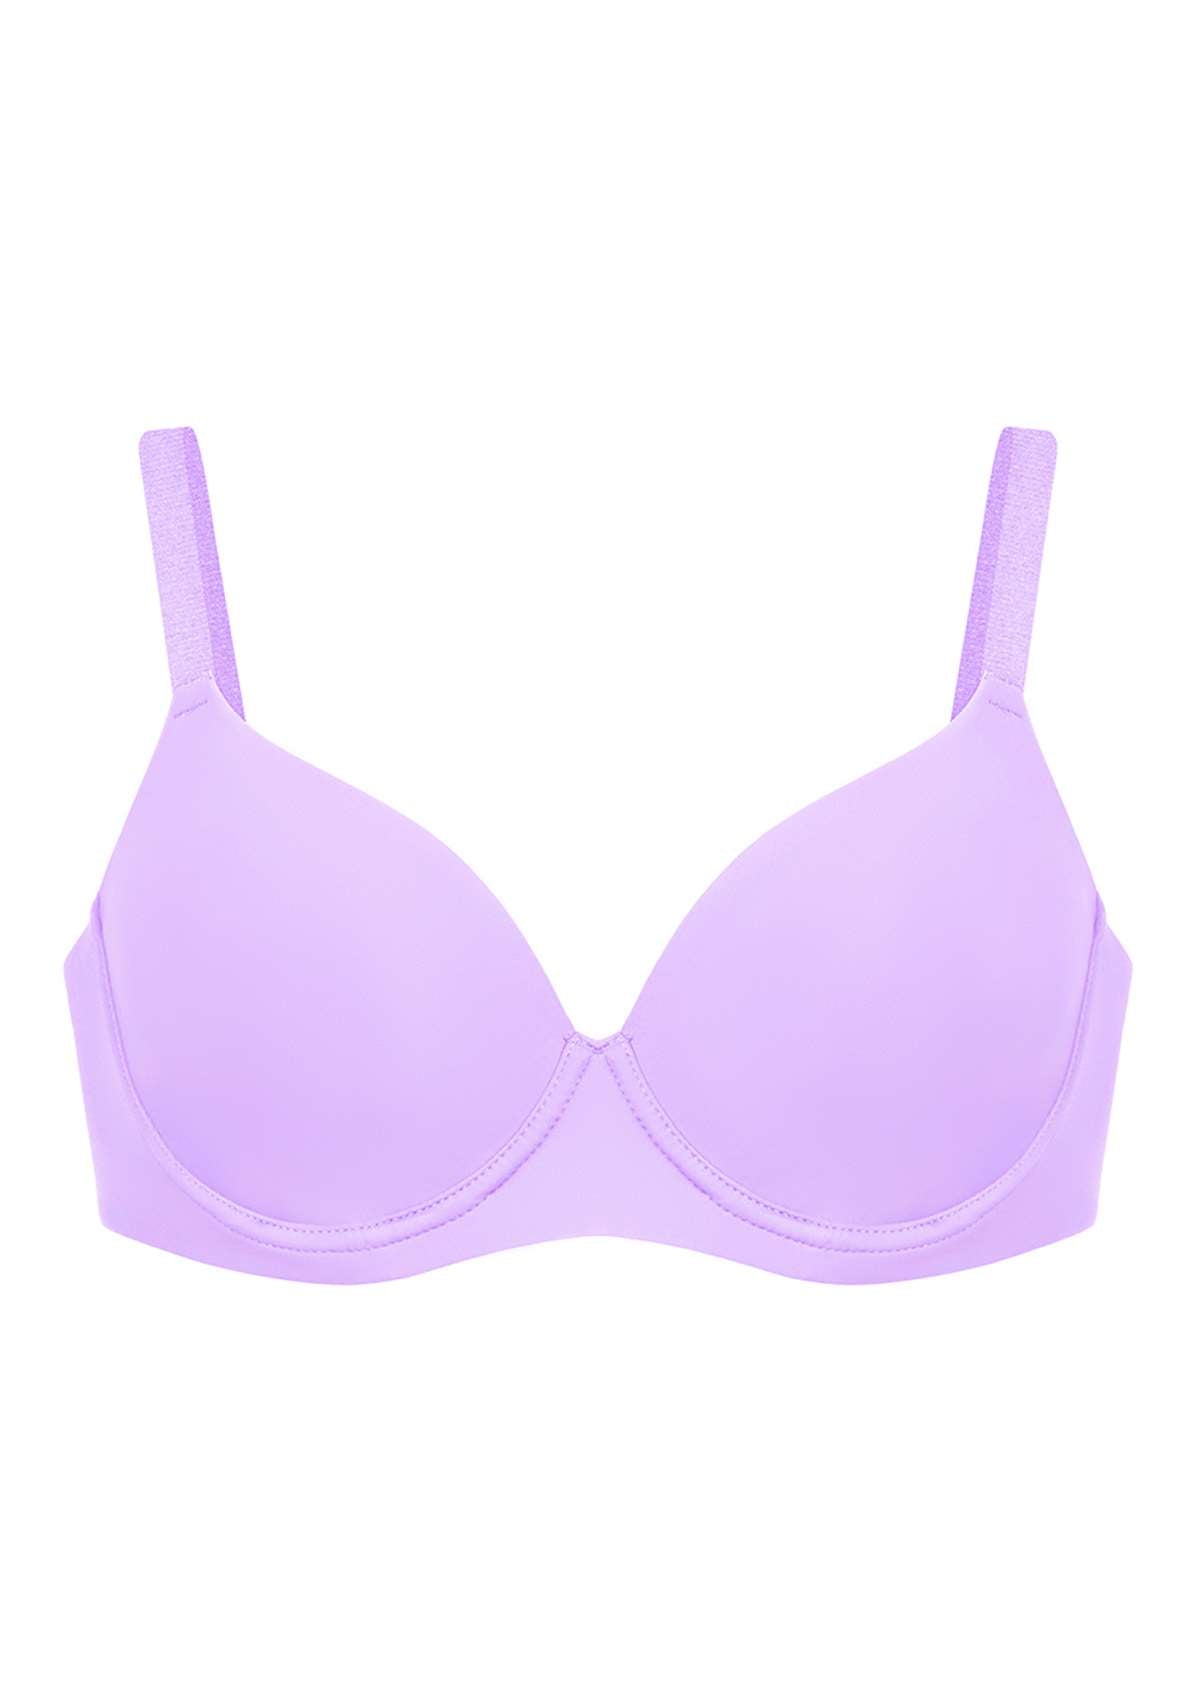 HSIA Gemma Smooth Lightly Padded T-shirt Bra For Heavy Breasts - Purple / 36 / DDD/F